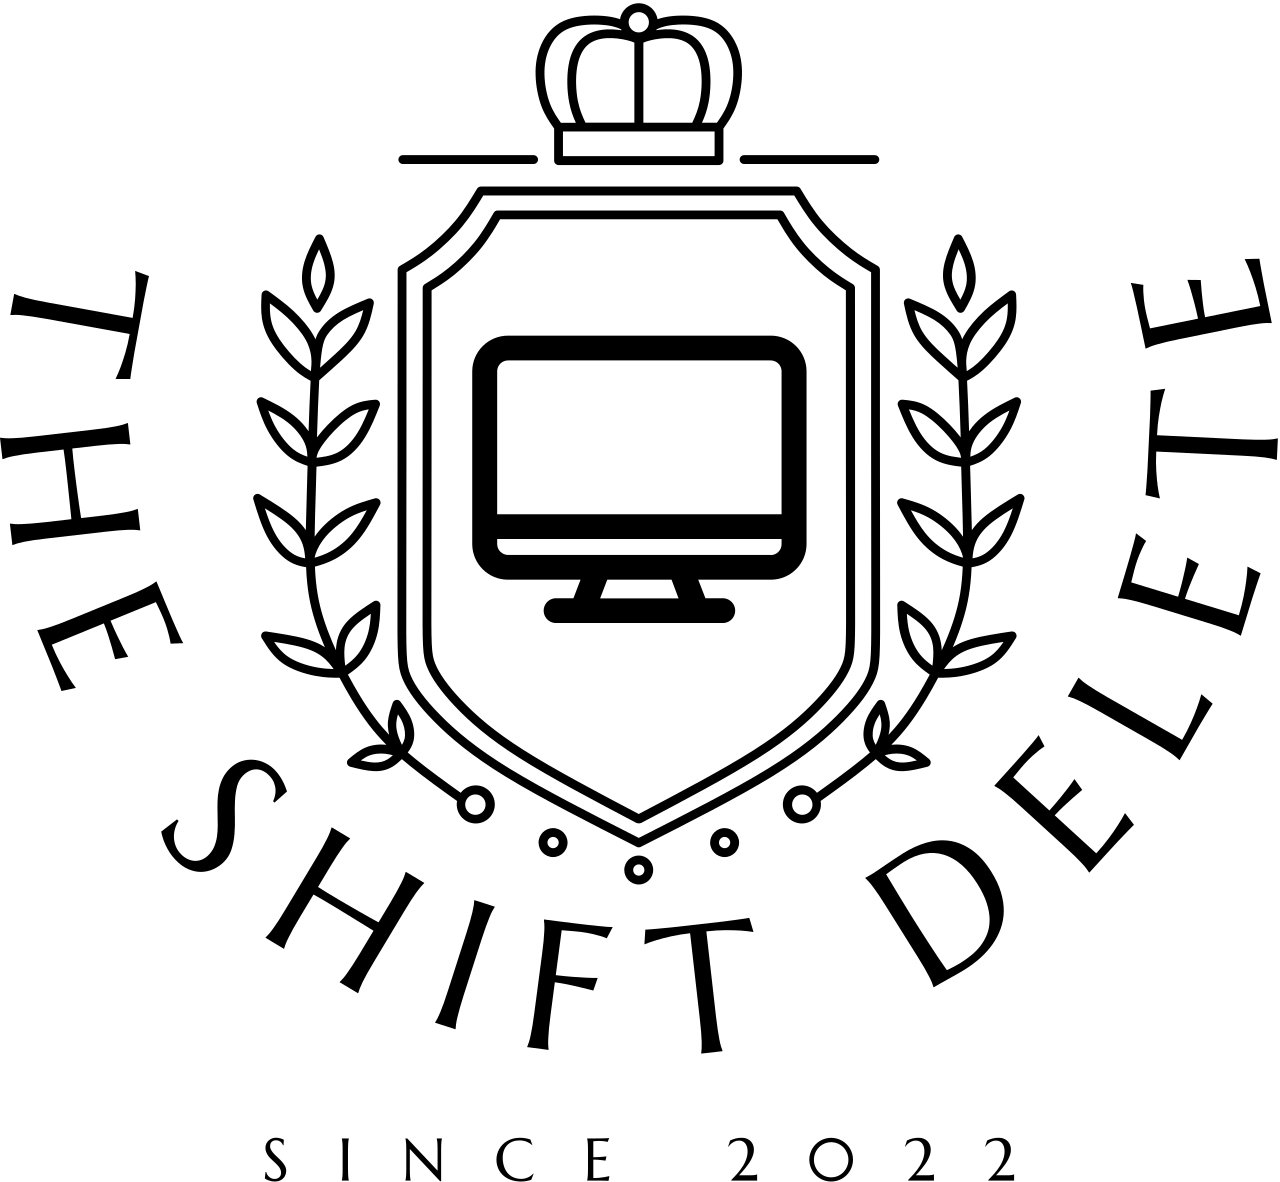 THE SHIFT DELETE's logo